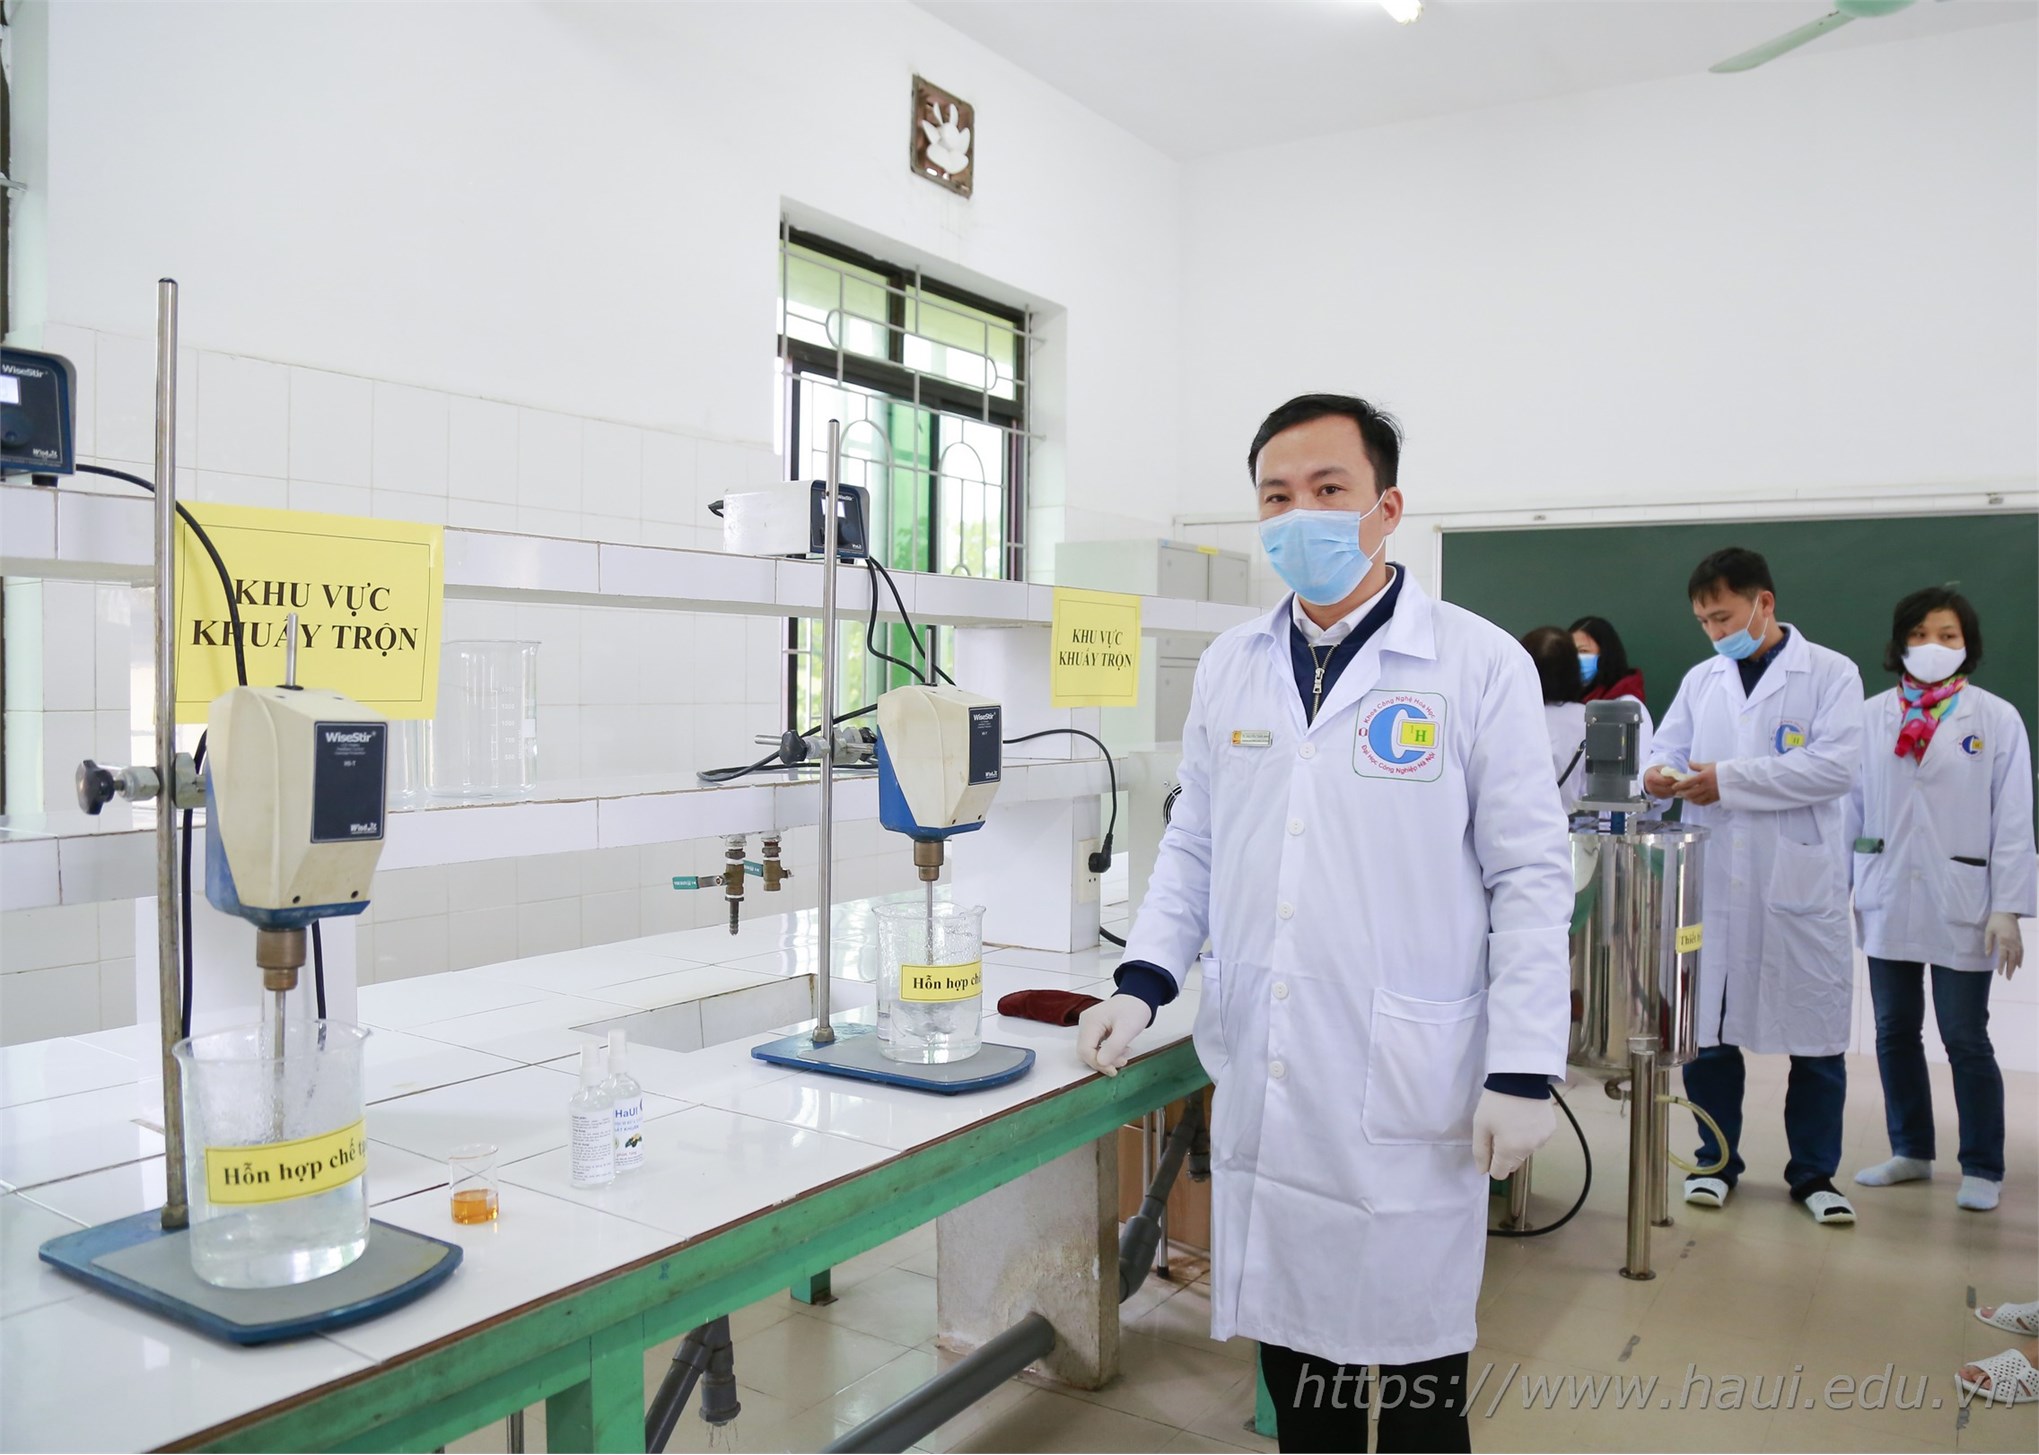 Đại học Công nghiệp Hà Nội sản xuất dung dịch phòng chống vi-rút Corona, phát miễn phí cho cán bộ, giảng viên và 30.000 học viên, sinh viên